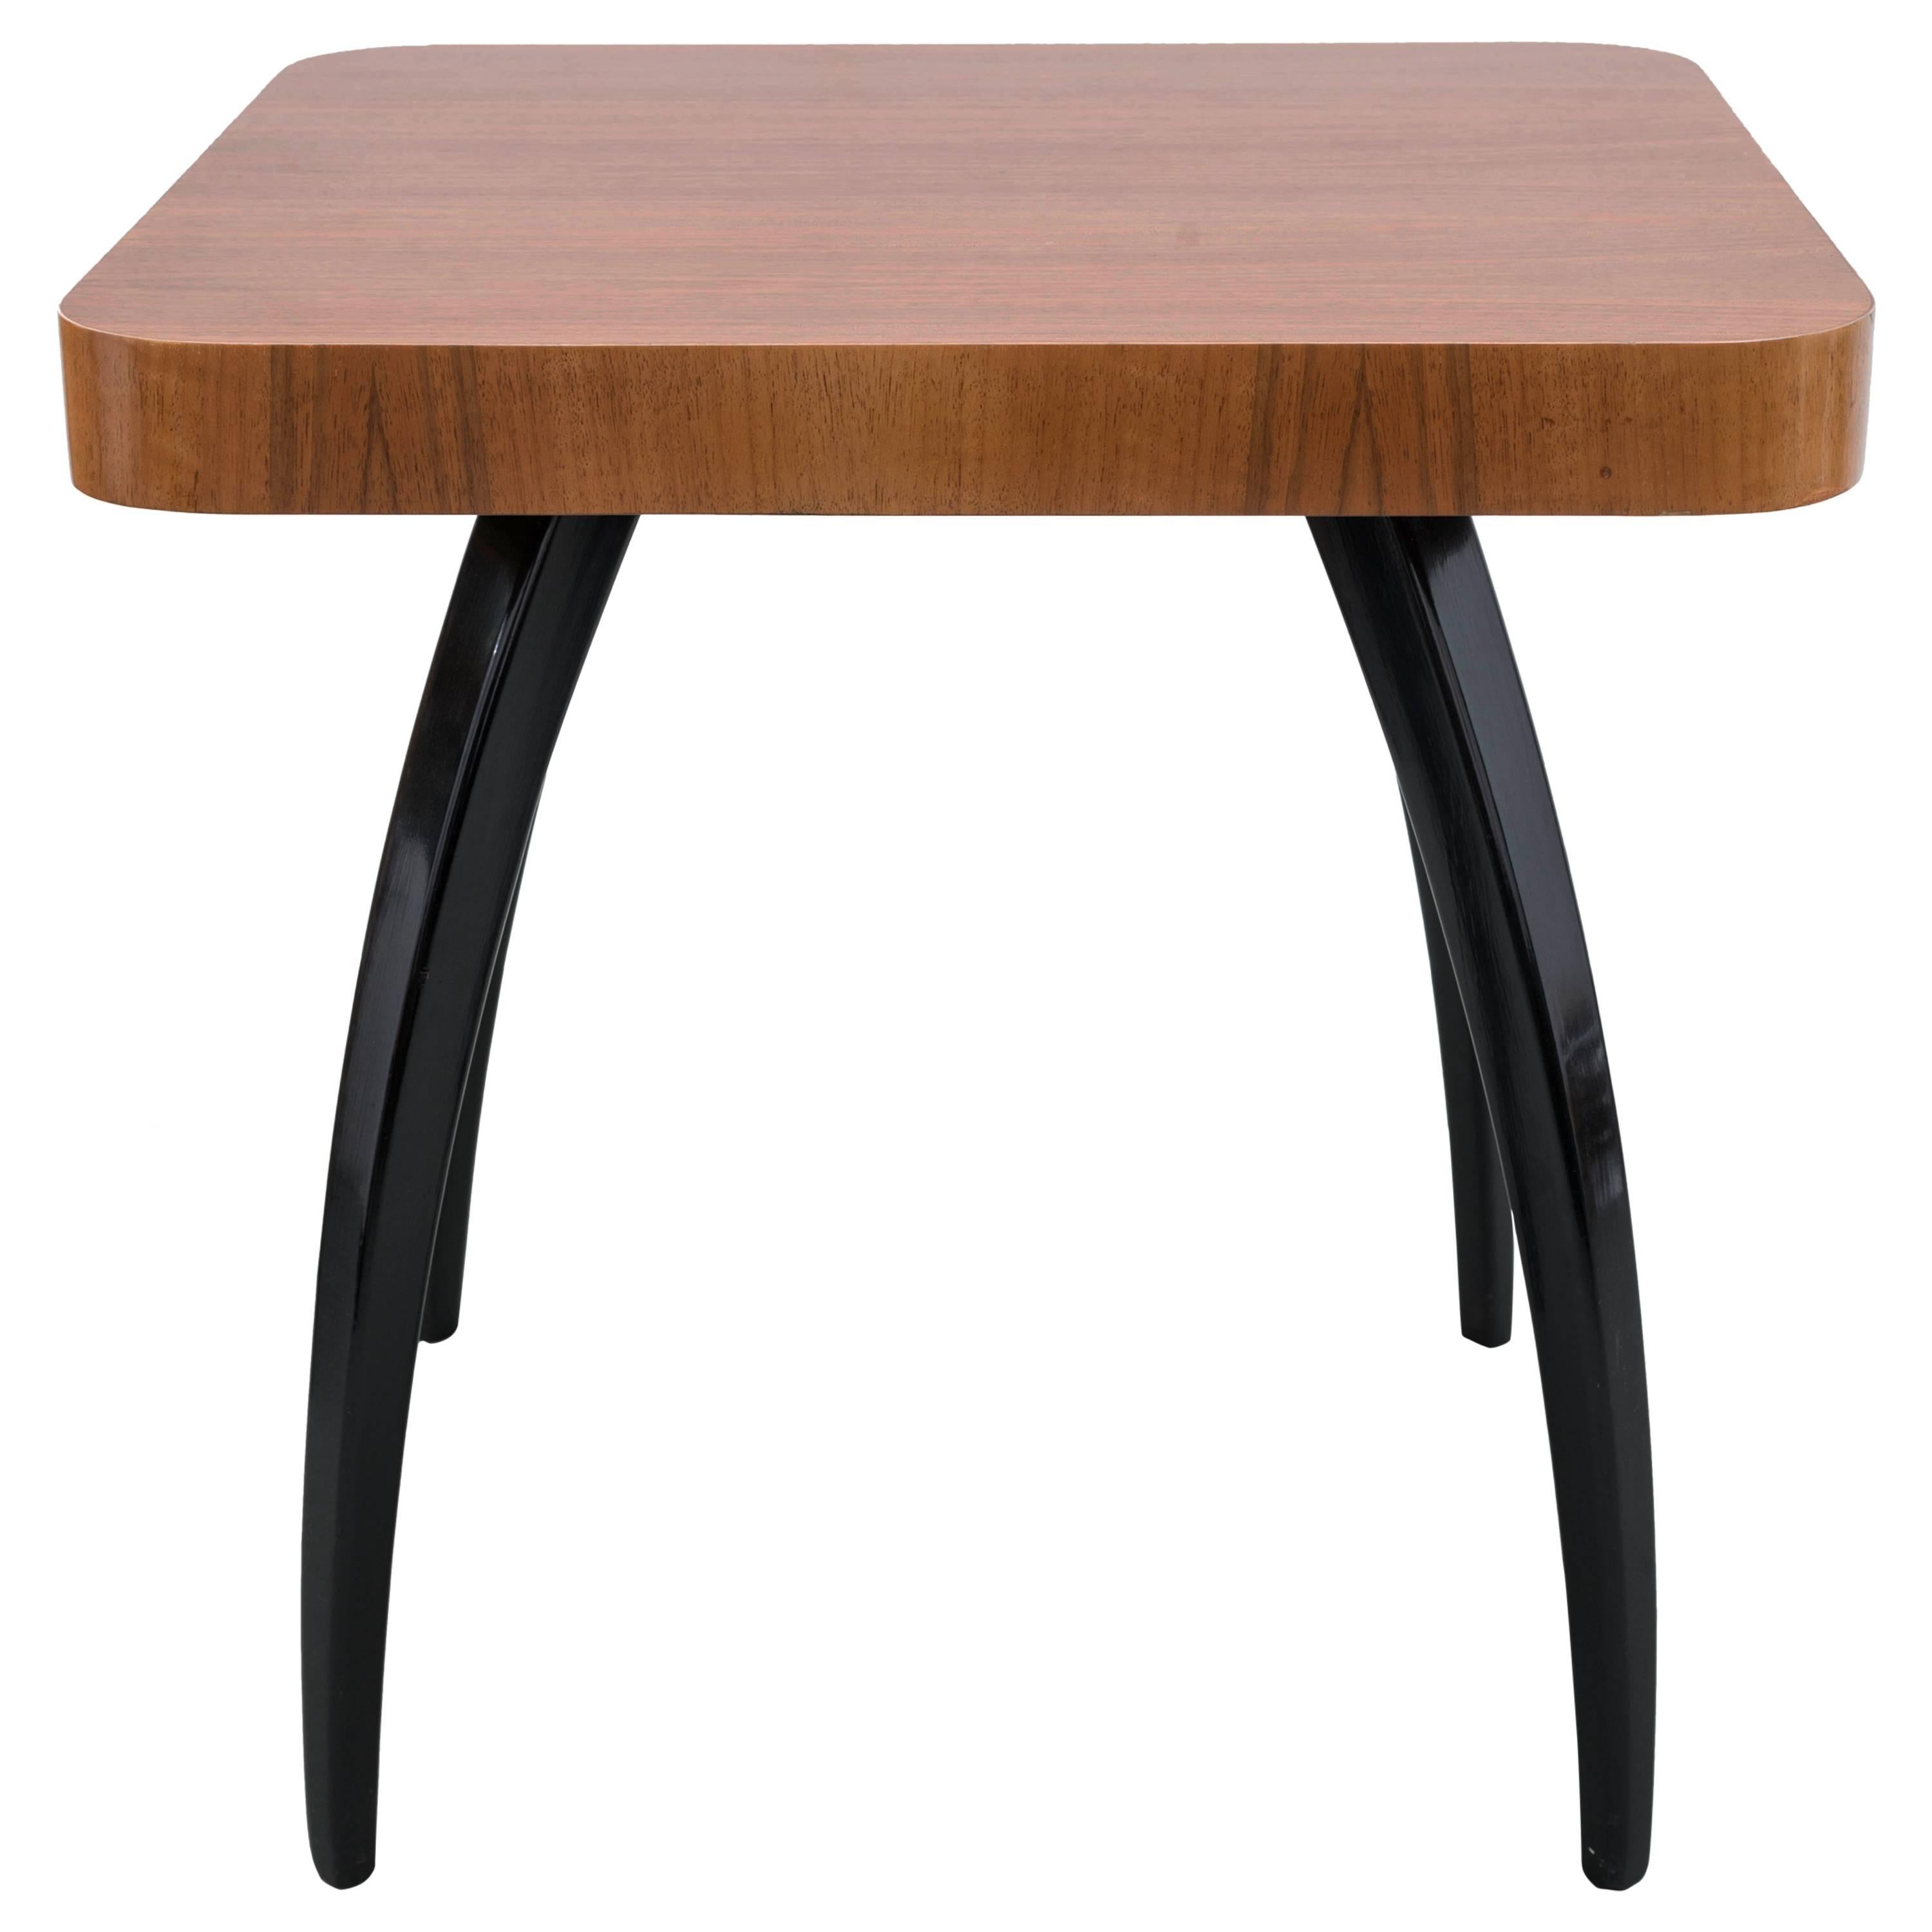 Model H 259 Art Deco Side Table in Wood by J. Halabala for Spojene UP Zavody